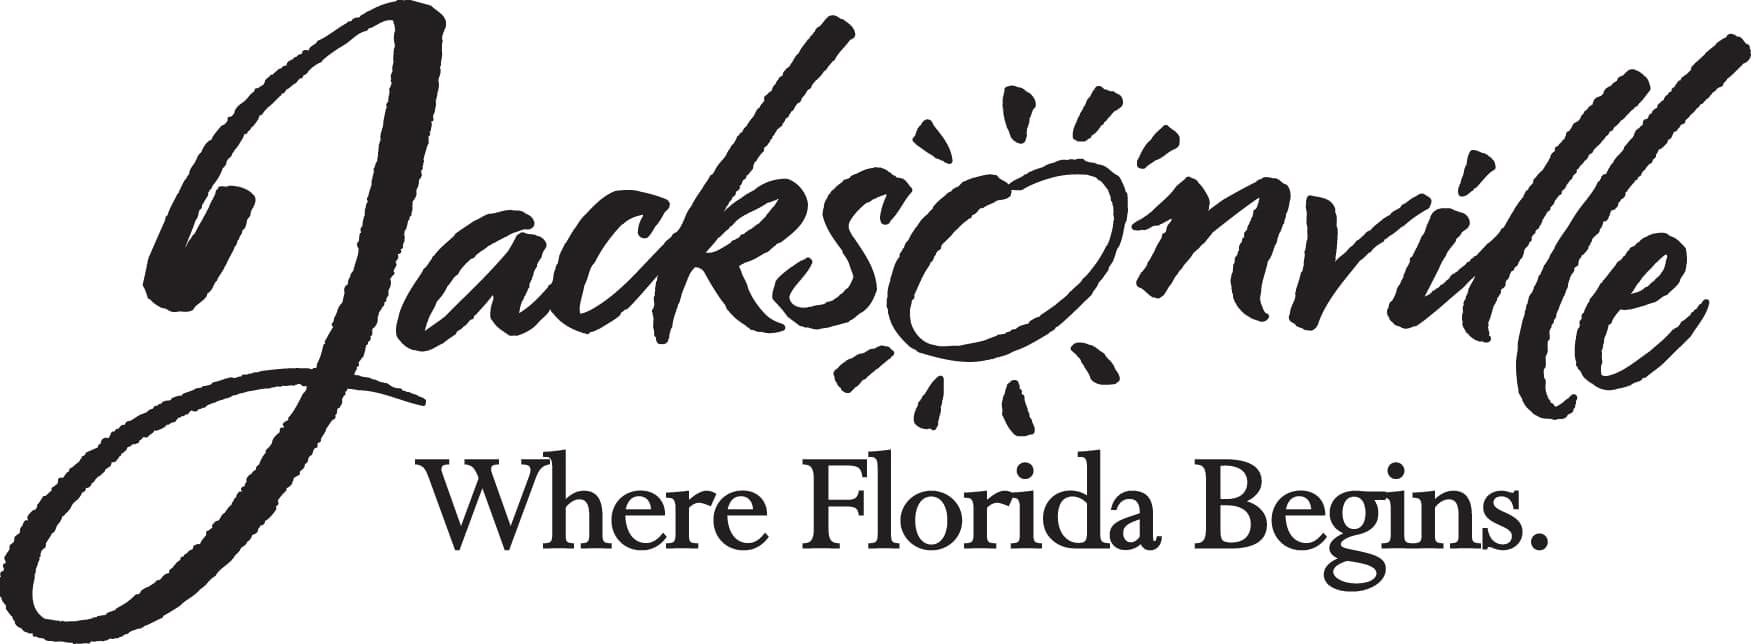 logo-jacksonville